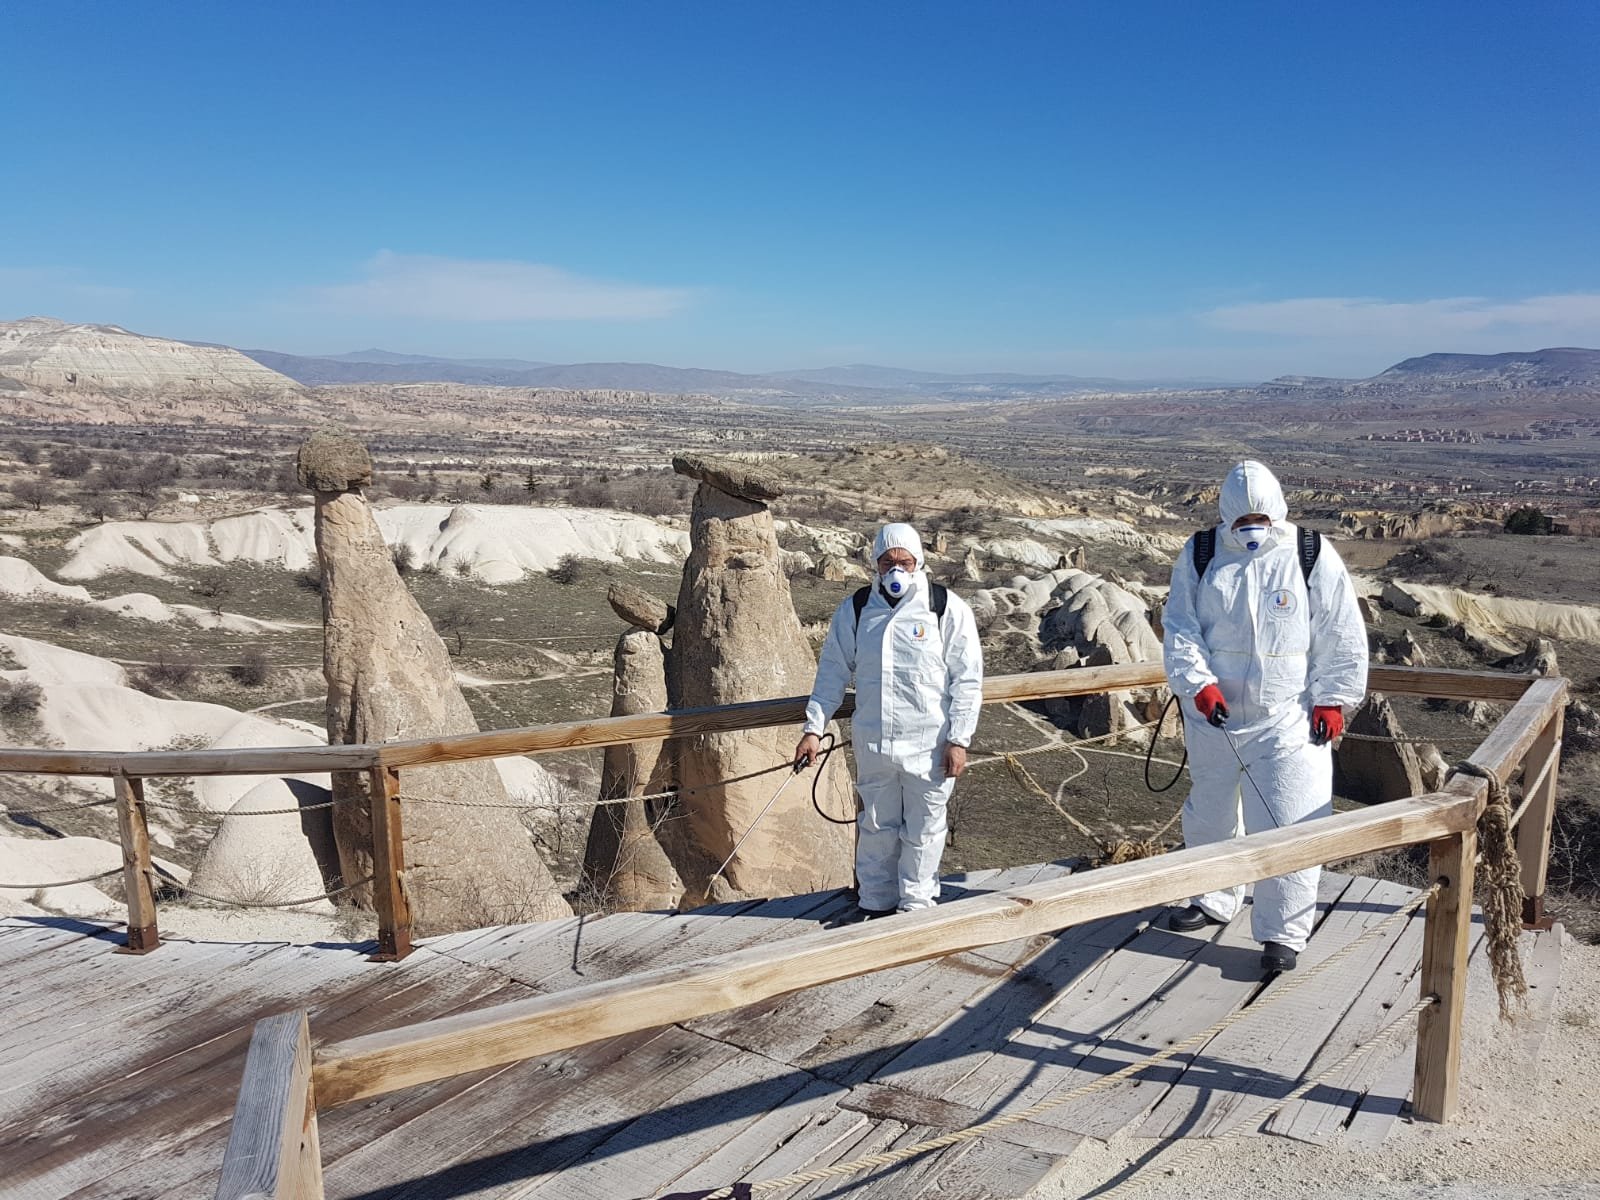 Kapadokya'da virüs temizliği